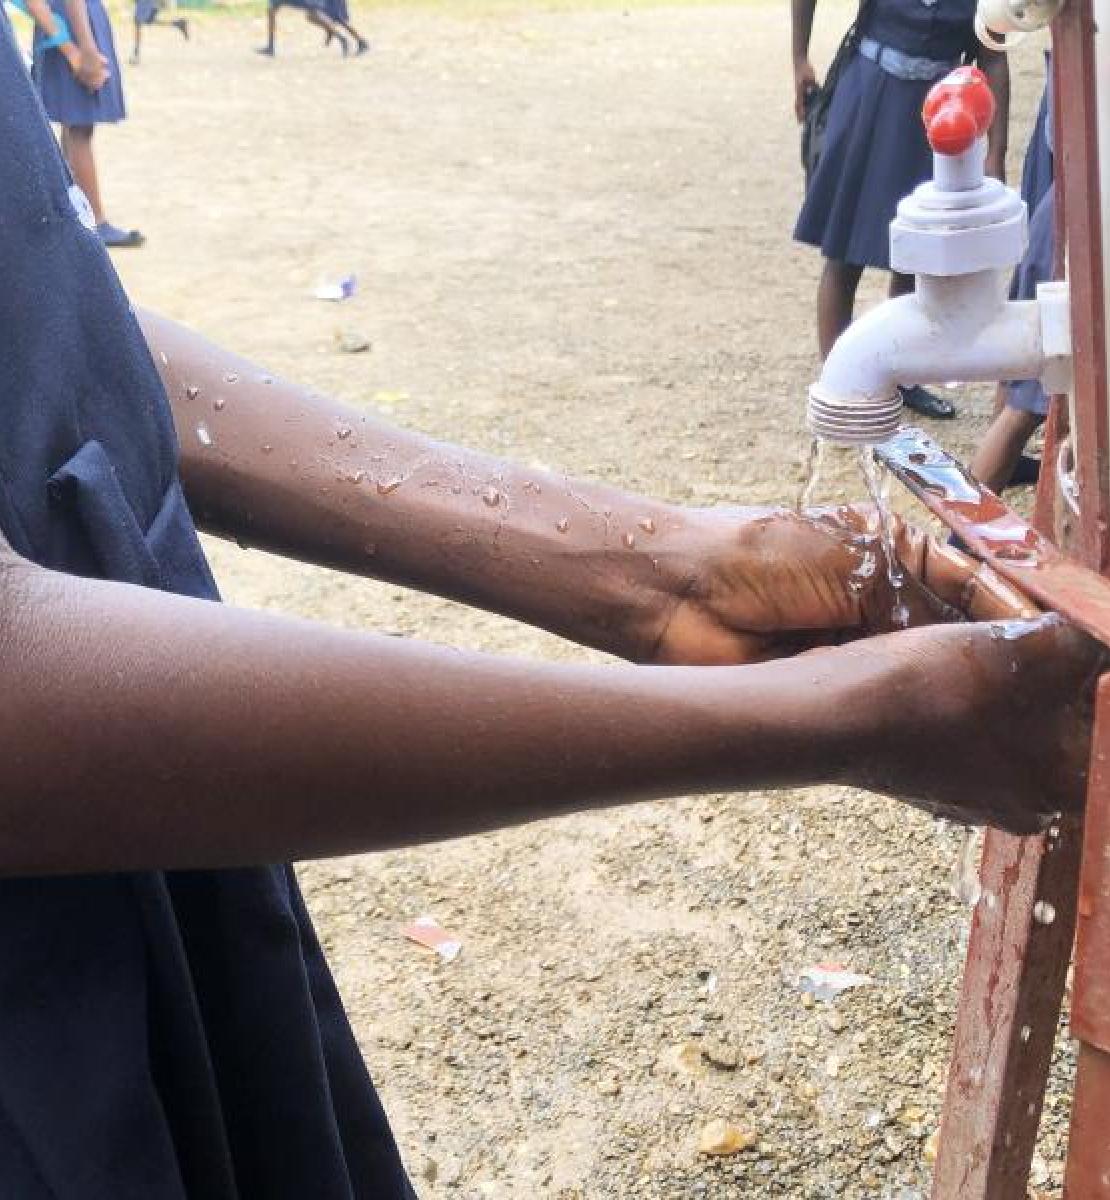 Une fille portant ce qui semble être un uniforme scolaire bleu foncé se lave les mains avec du savon dans une station de lavage des mains installée en extérieur.